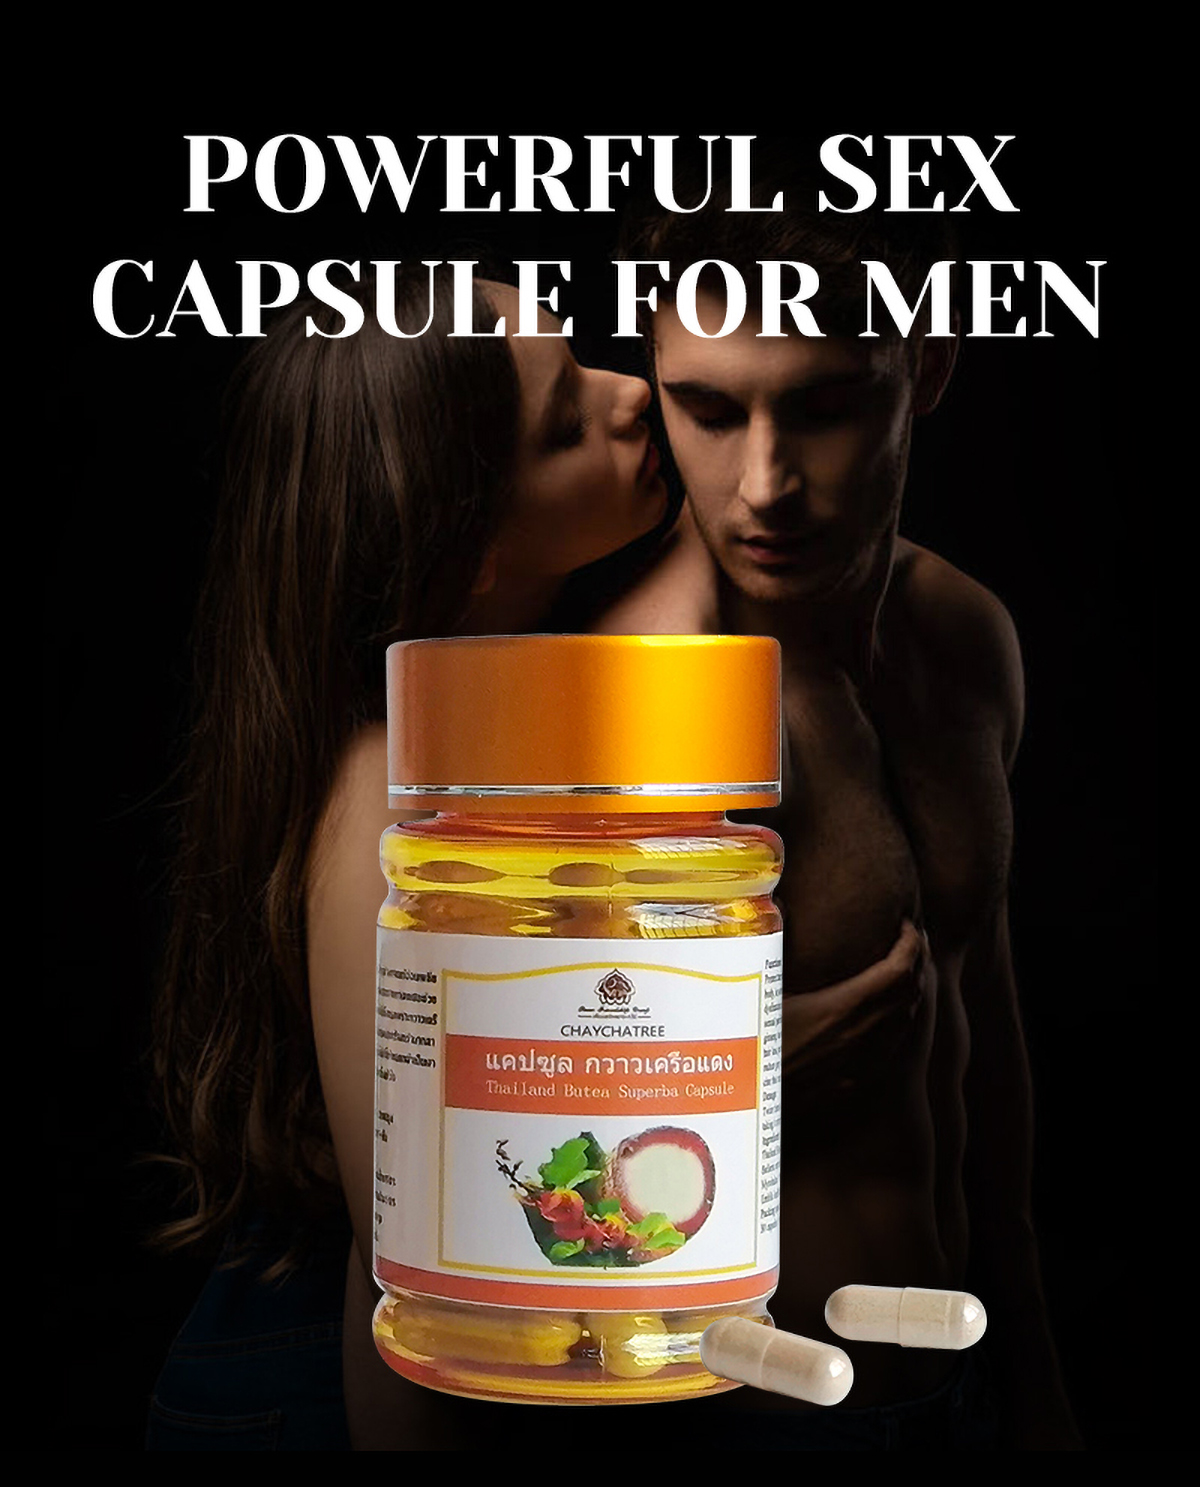 Potenzmittel für Männer (3)